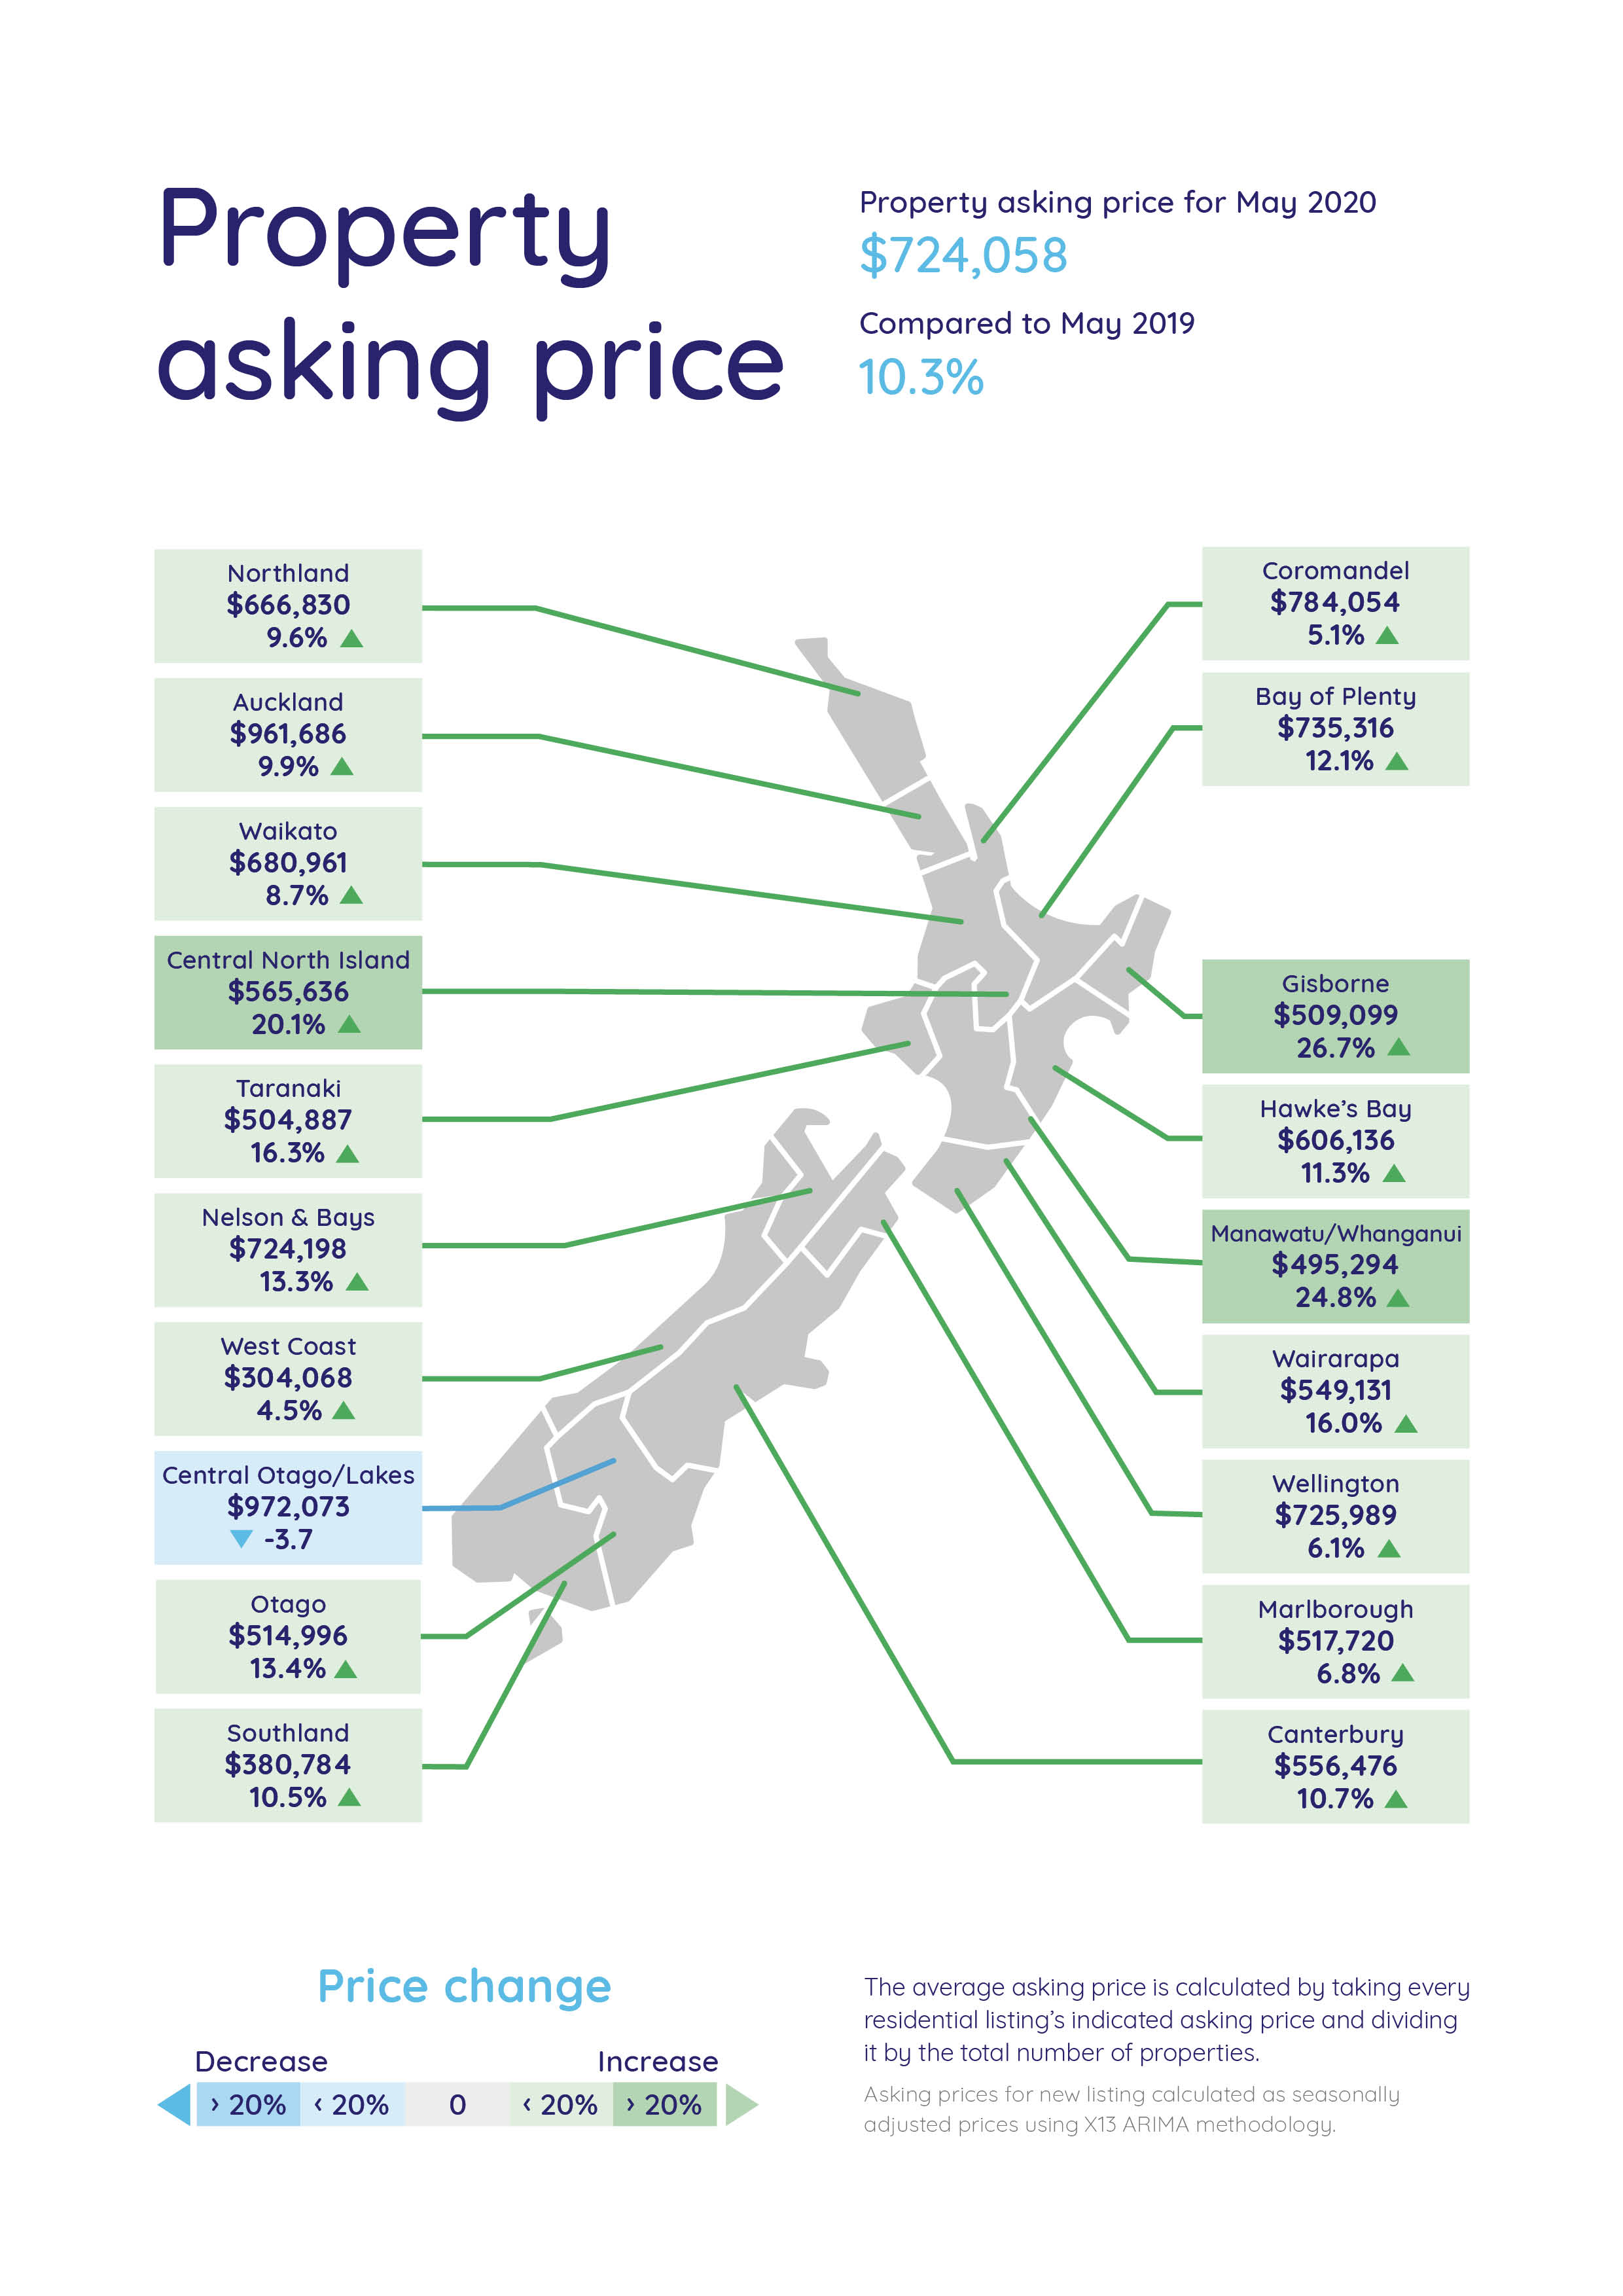 Average Asking Price Map - May 2020